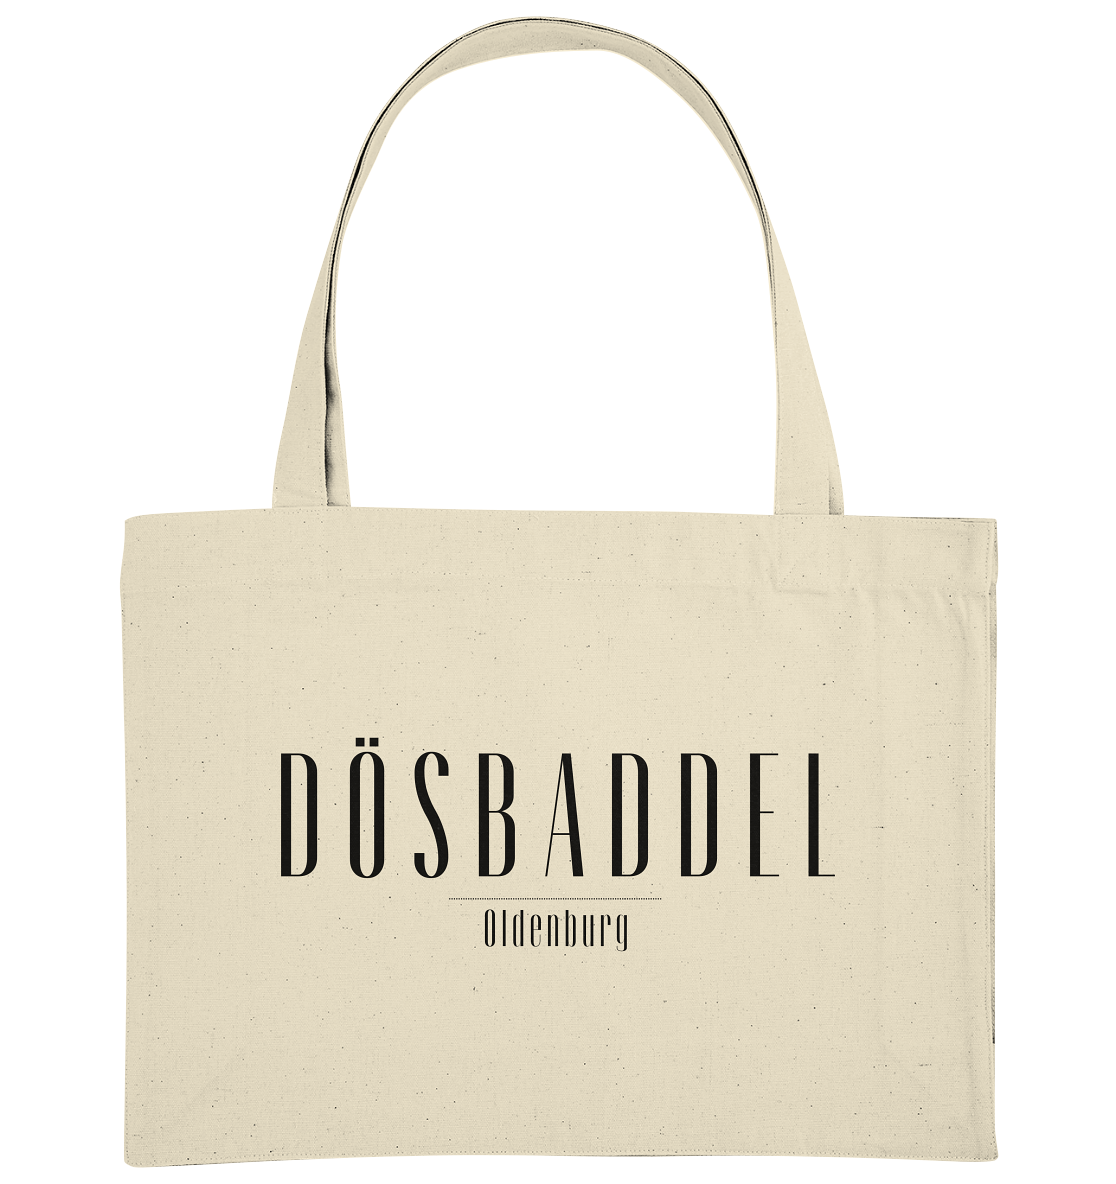 Dösbaddel - Organic Shopping-Bag